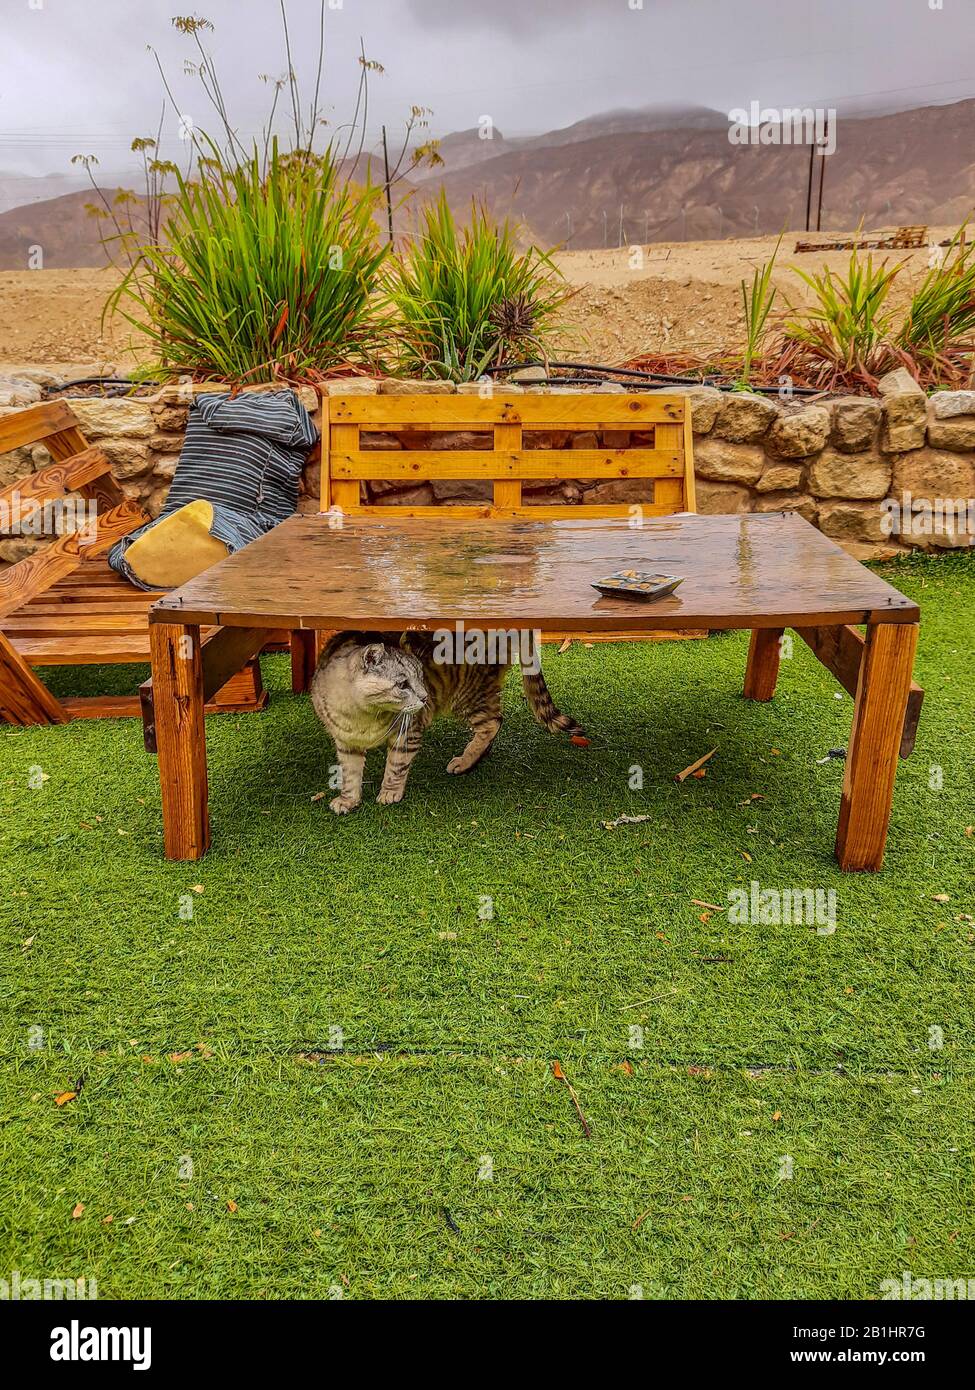 Die arme Katze versteckte sich vor starken Regenfällen unter dem Tisch, nachdem er sich nass fühlte Stockfoto